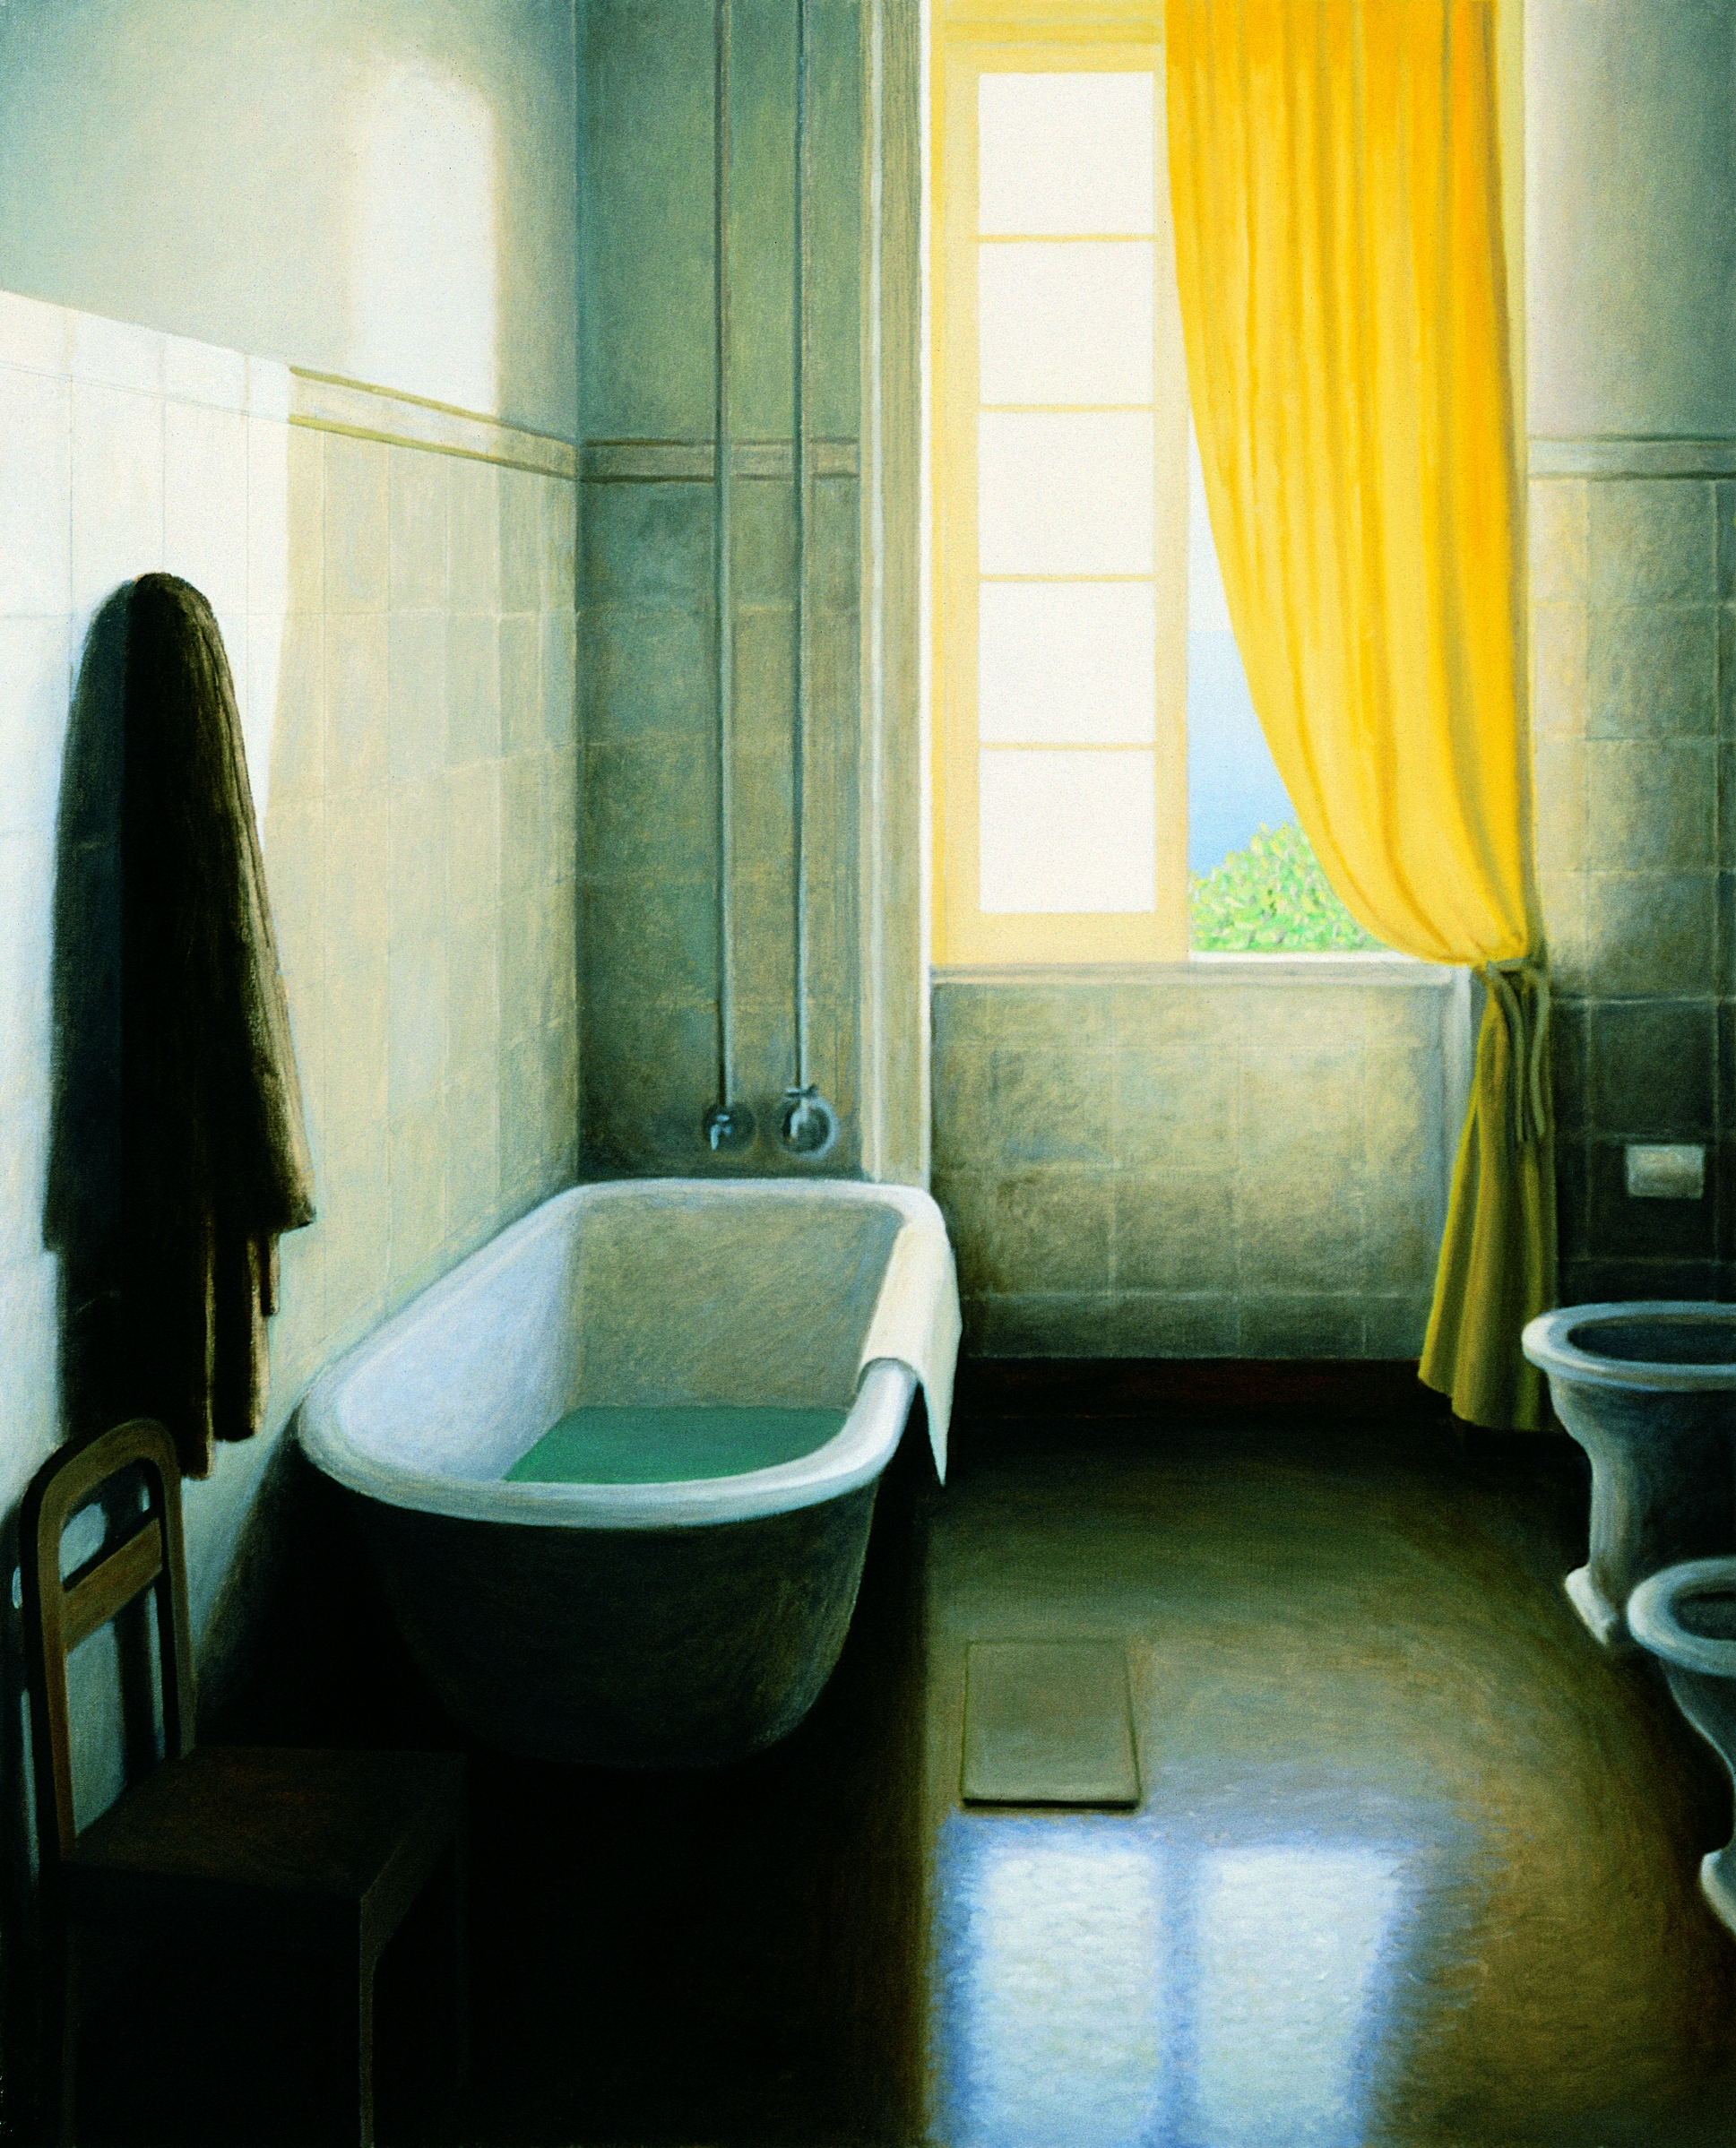 Casa de banho com cortina amarela, 1992, oleo sobre tela.tif